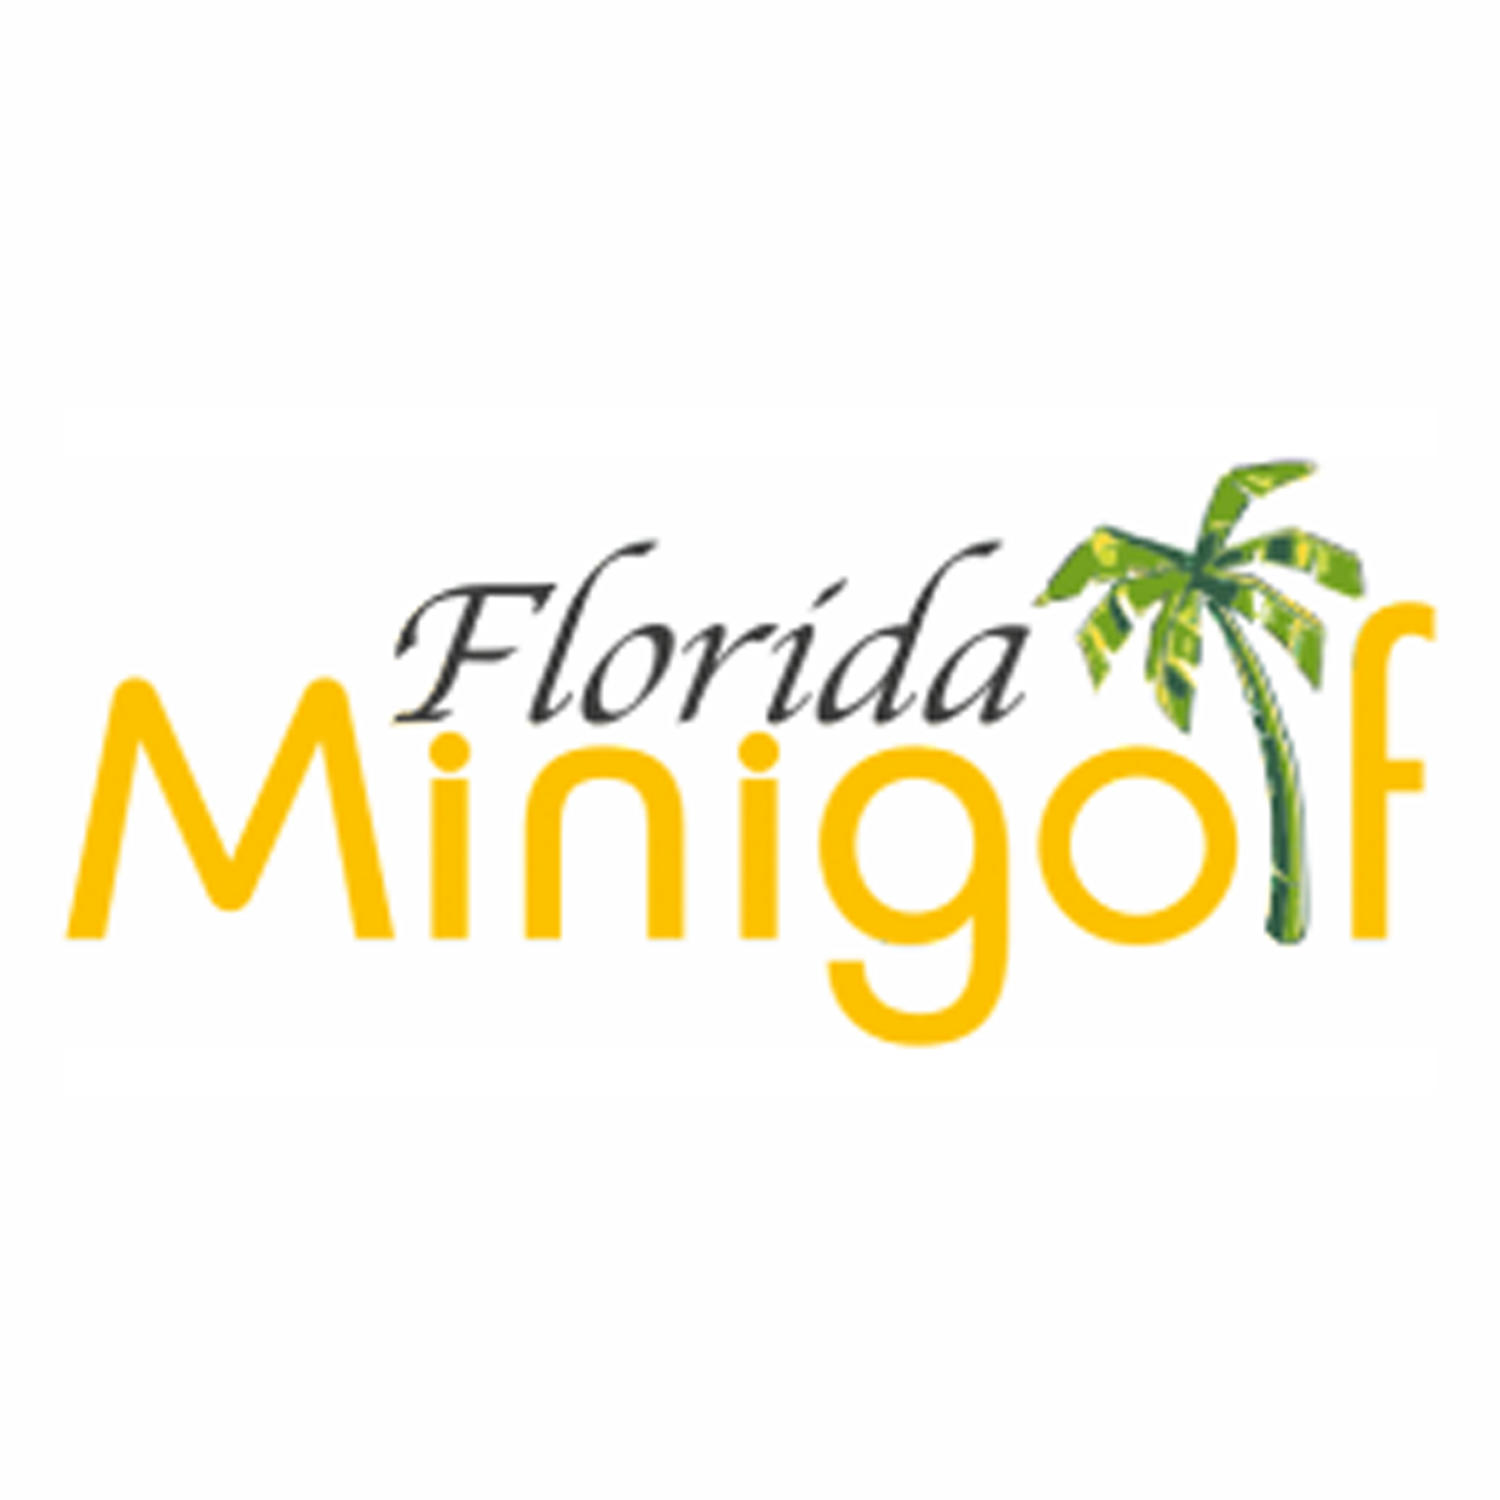 Minigolf Florida Logo